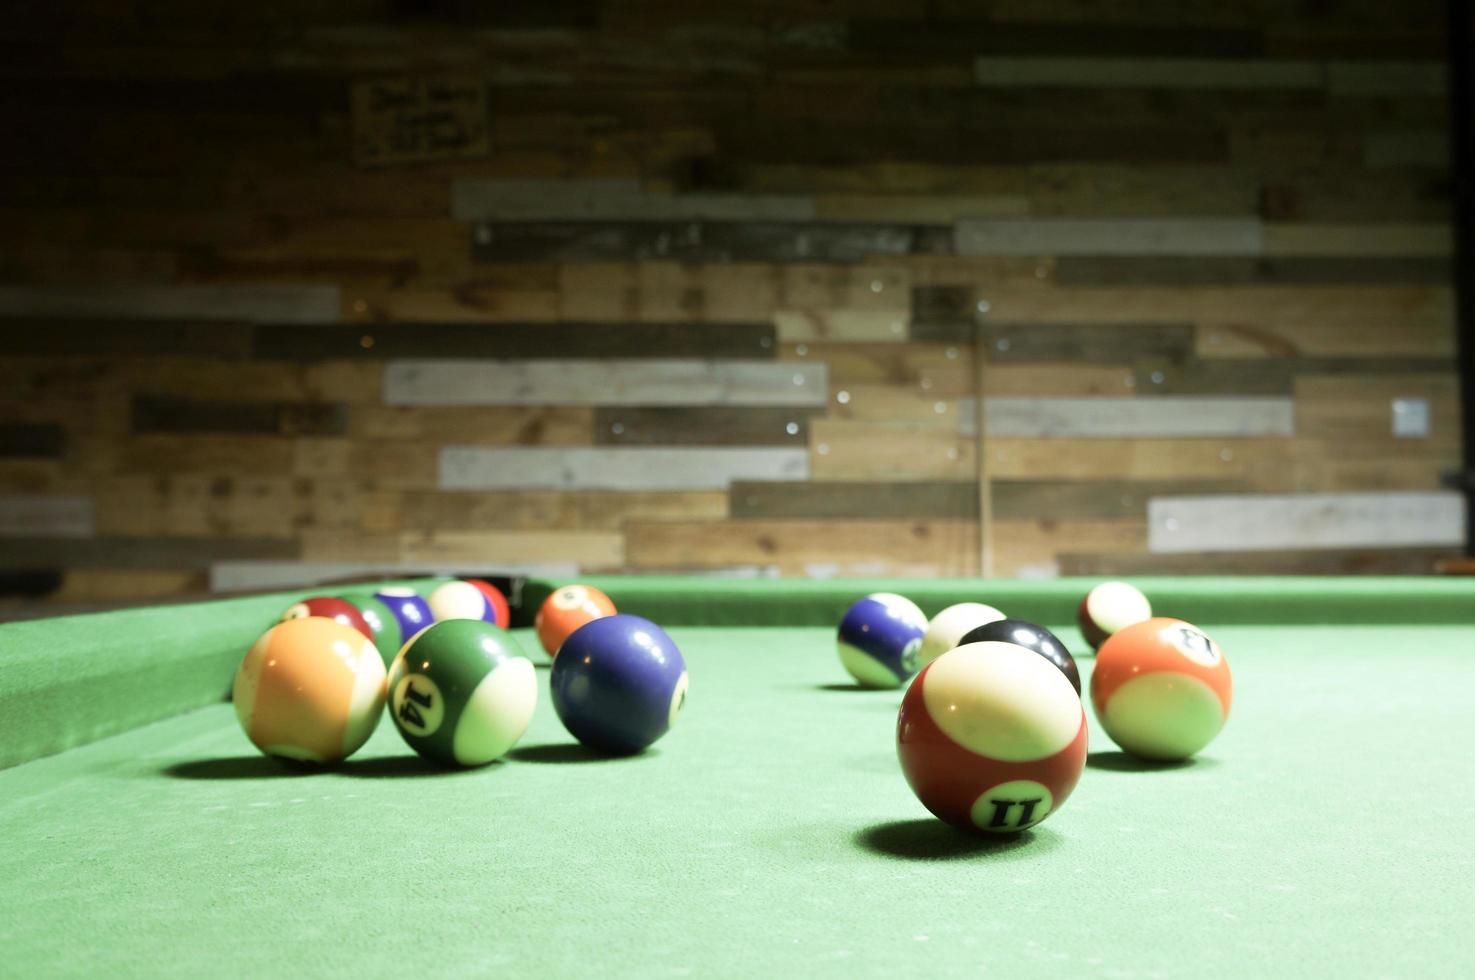 biljartballen op een groene tafel. foto